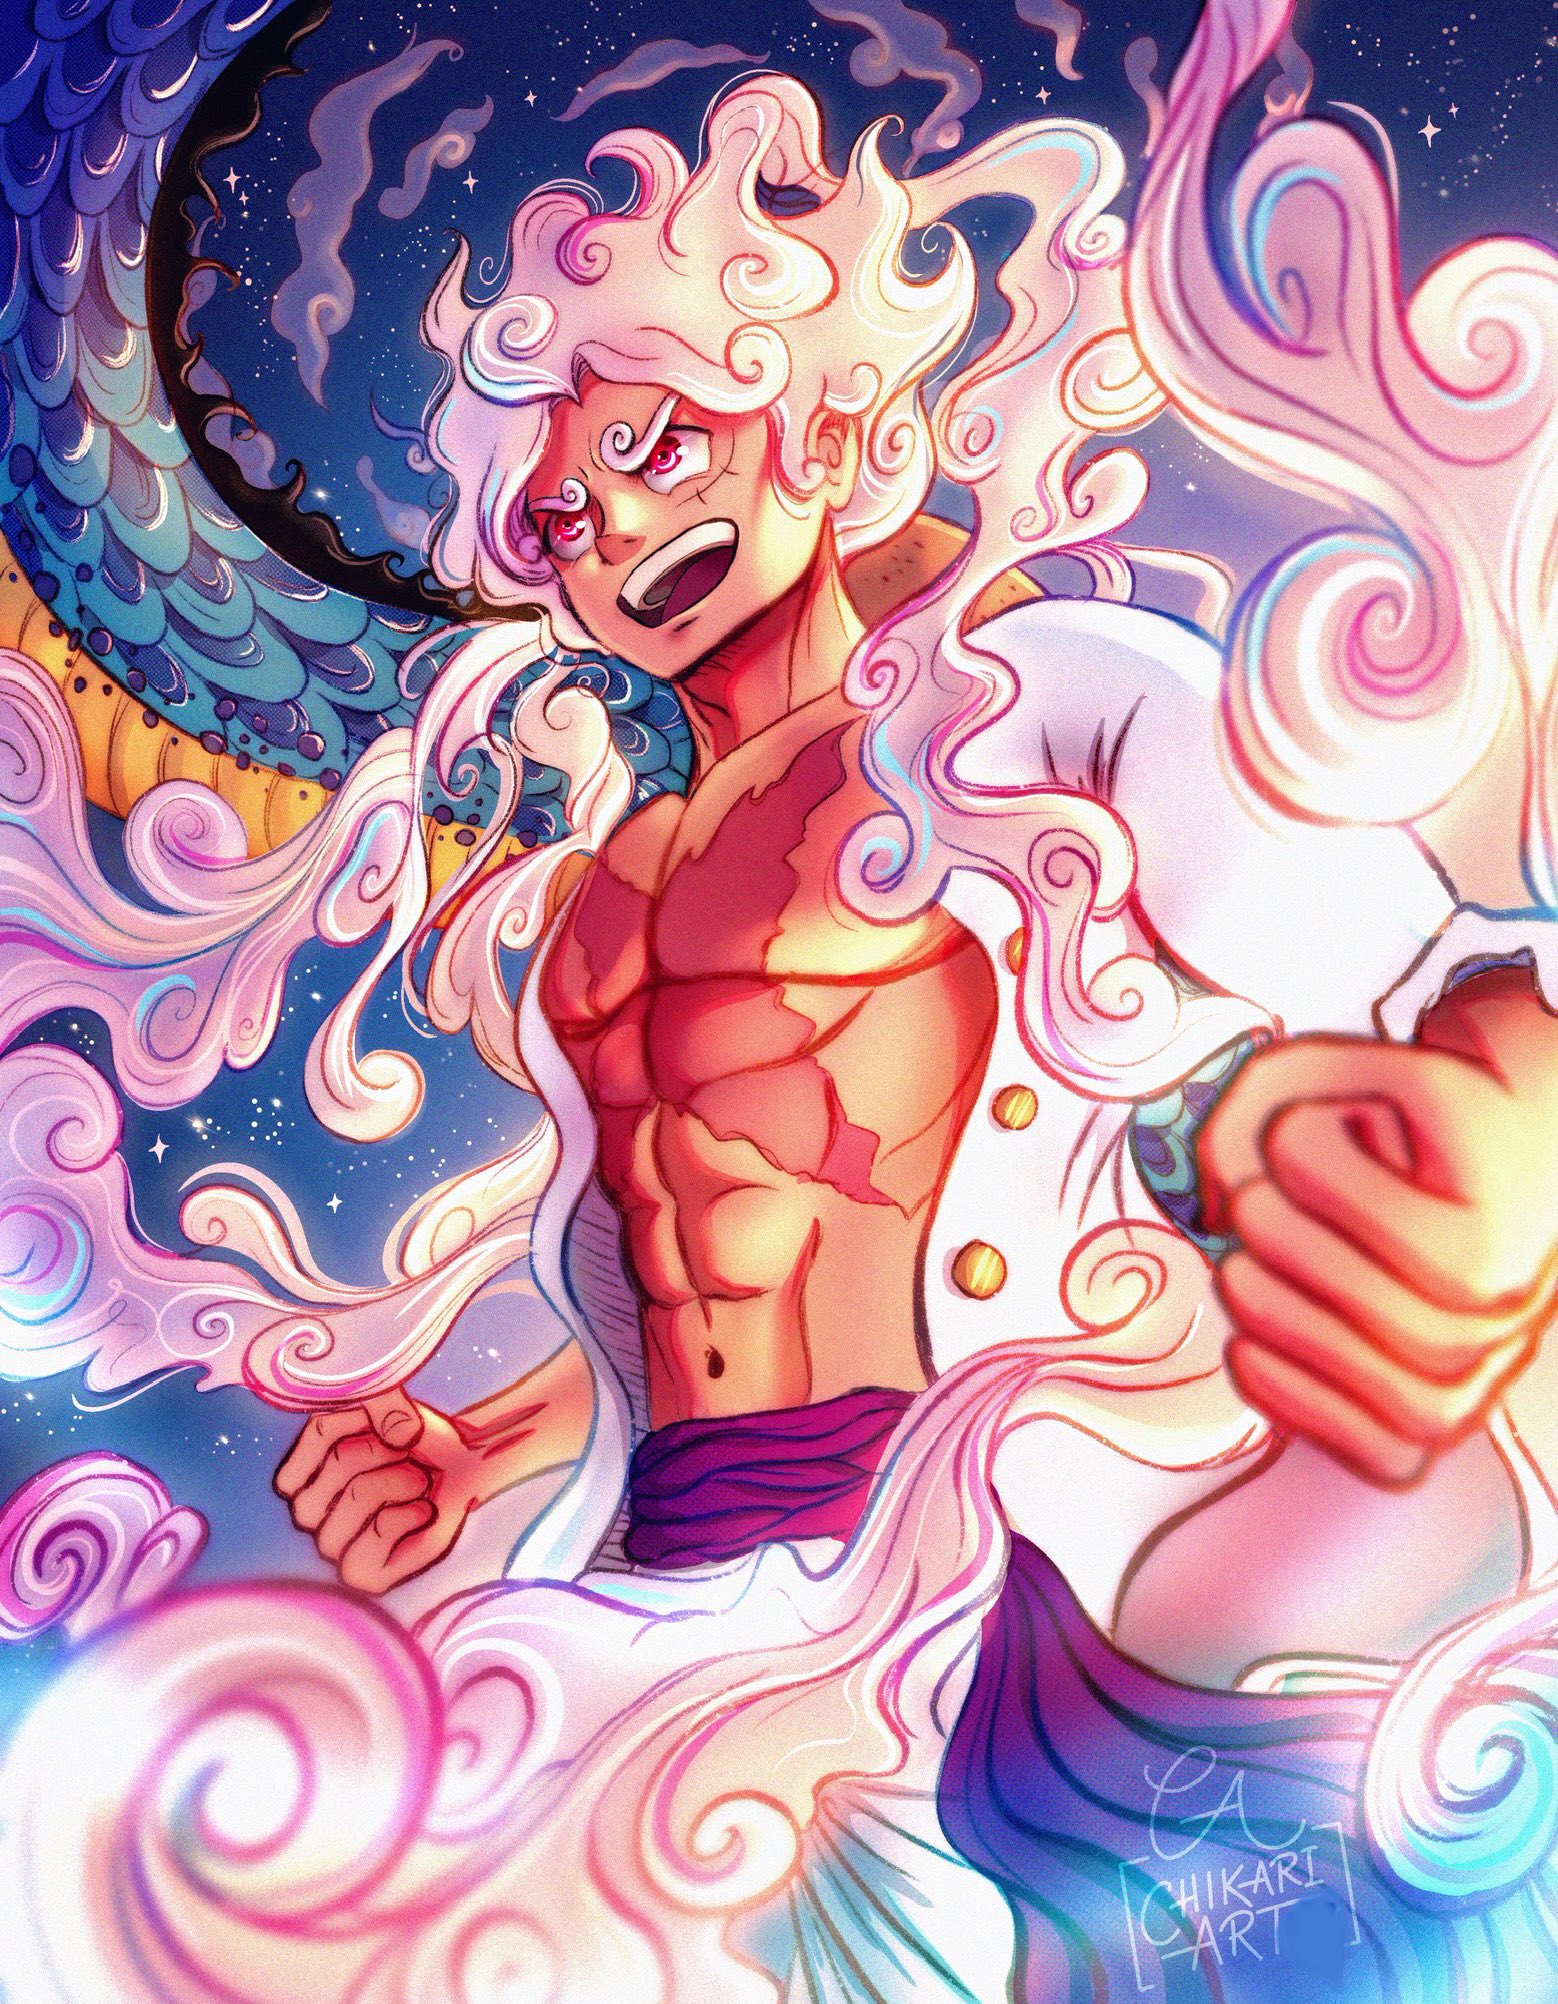 joyboy - One Piece Wallpaper (45159180) - Fanpop